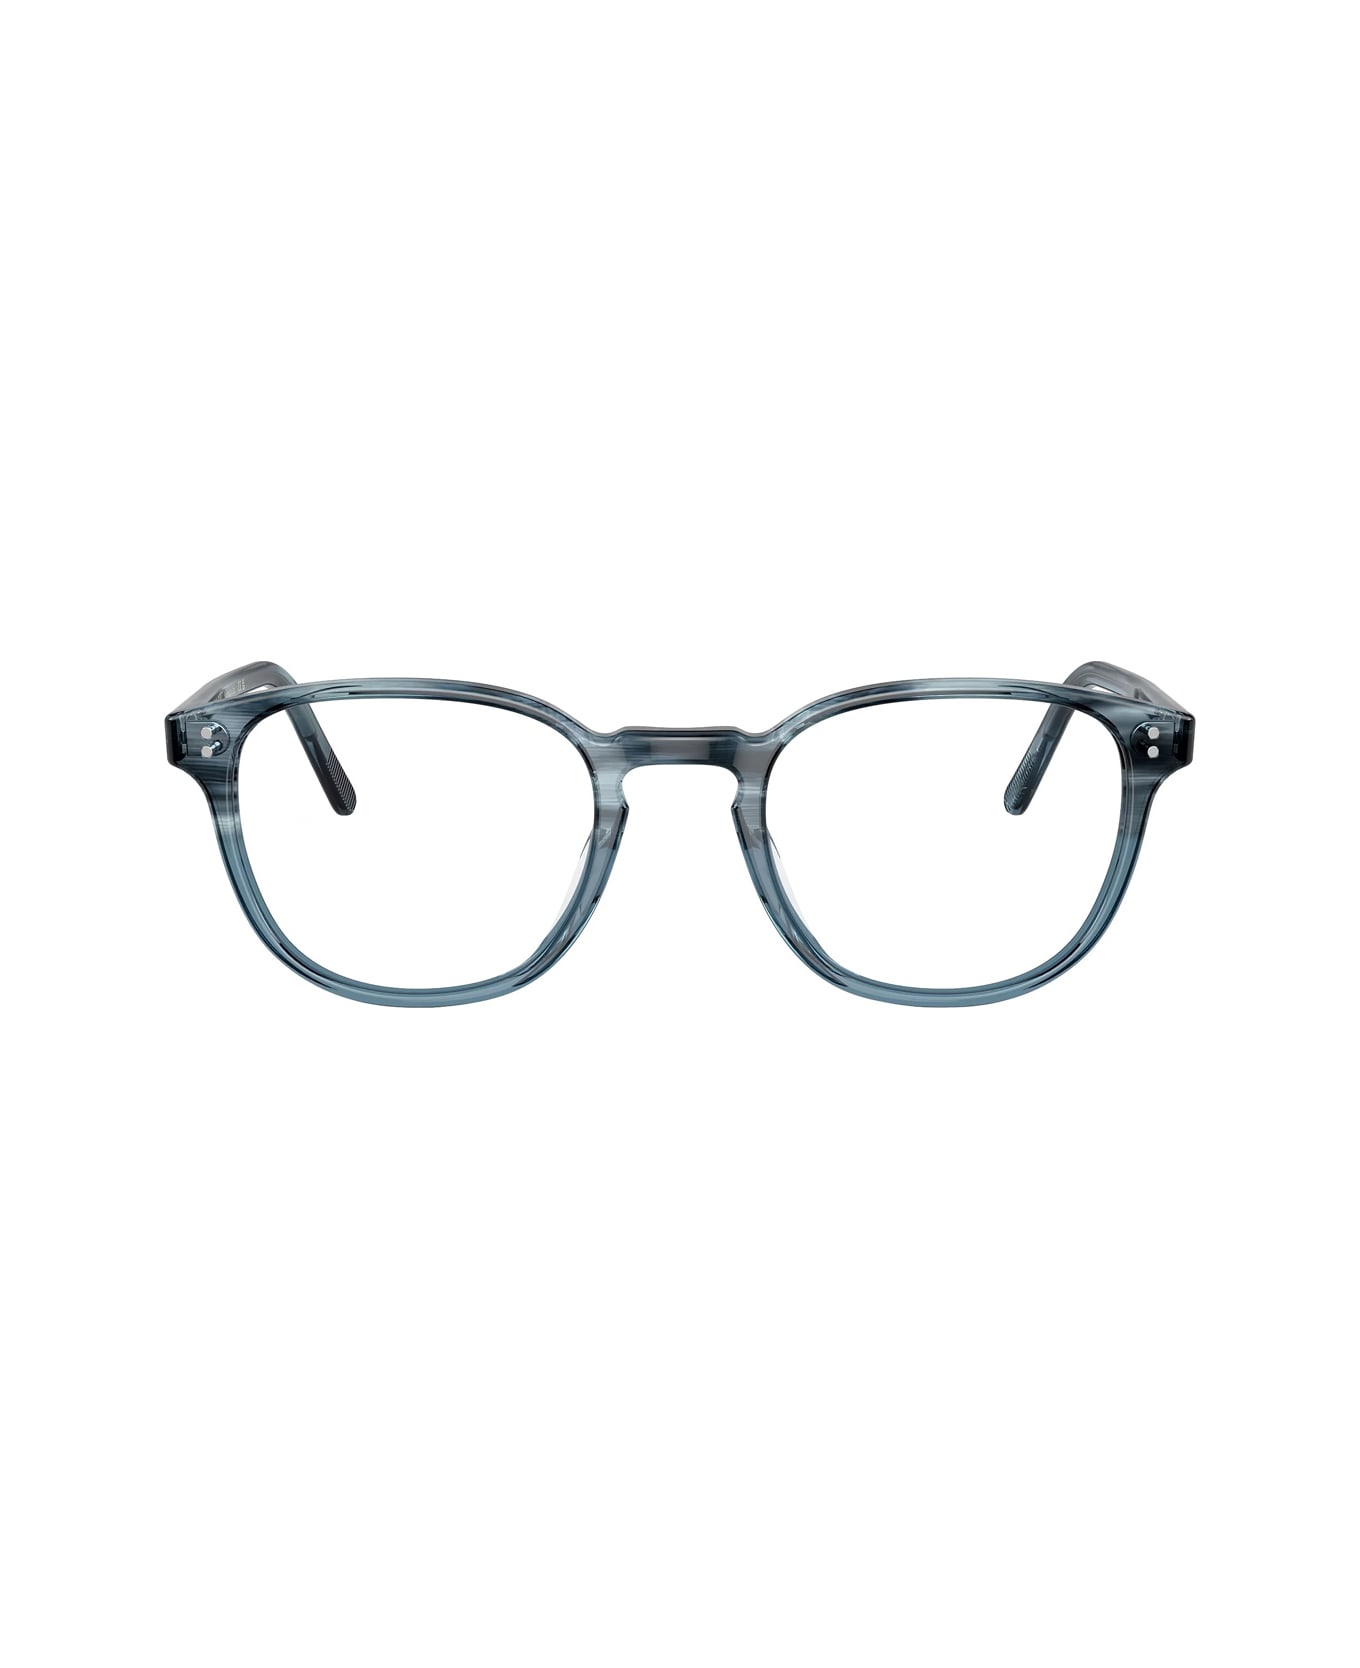 Oliver Peoples Ov5219 - Fairmont 1730 Glasses - Blu アイウェア